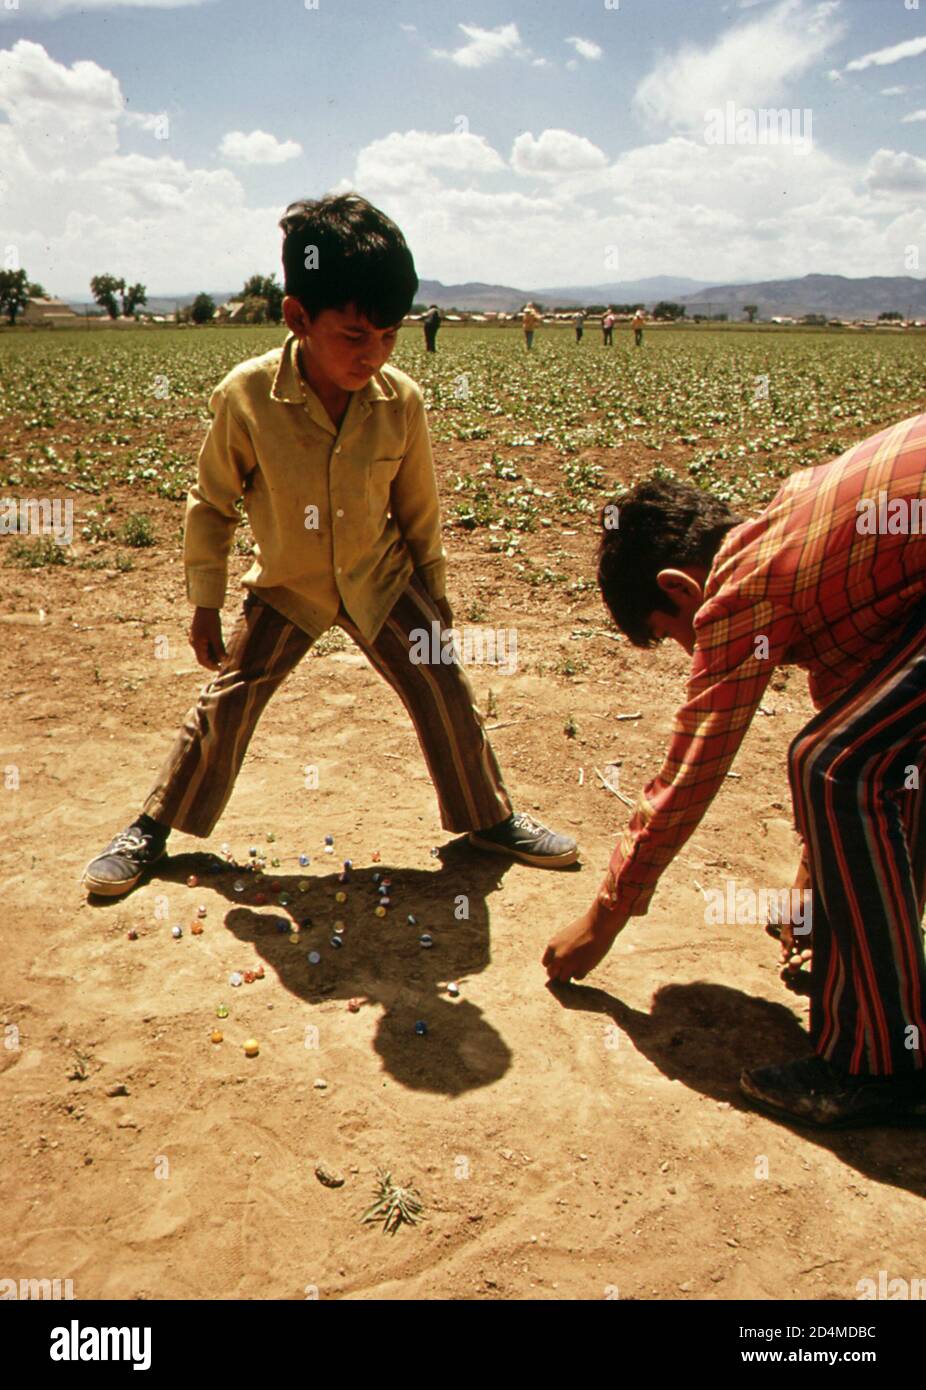 Die Kinder von Wanderarbeitern spielen Murmeln, während ihre Eltern auf Feldern arbeiten - Ort: In oder in der Nähe von Ft. Collins; Colorado Ca. 1972 Stockfoto